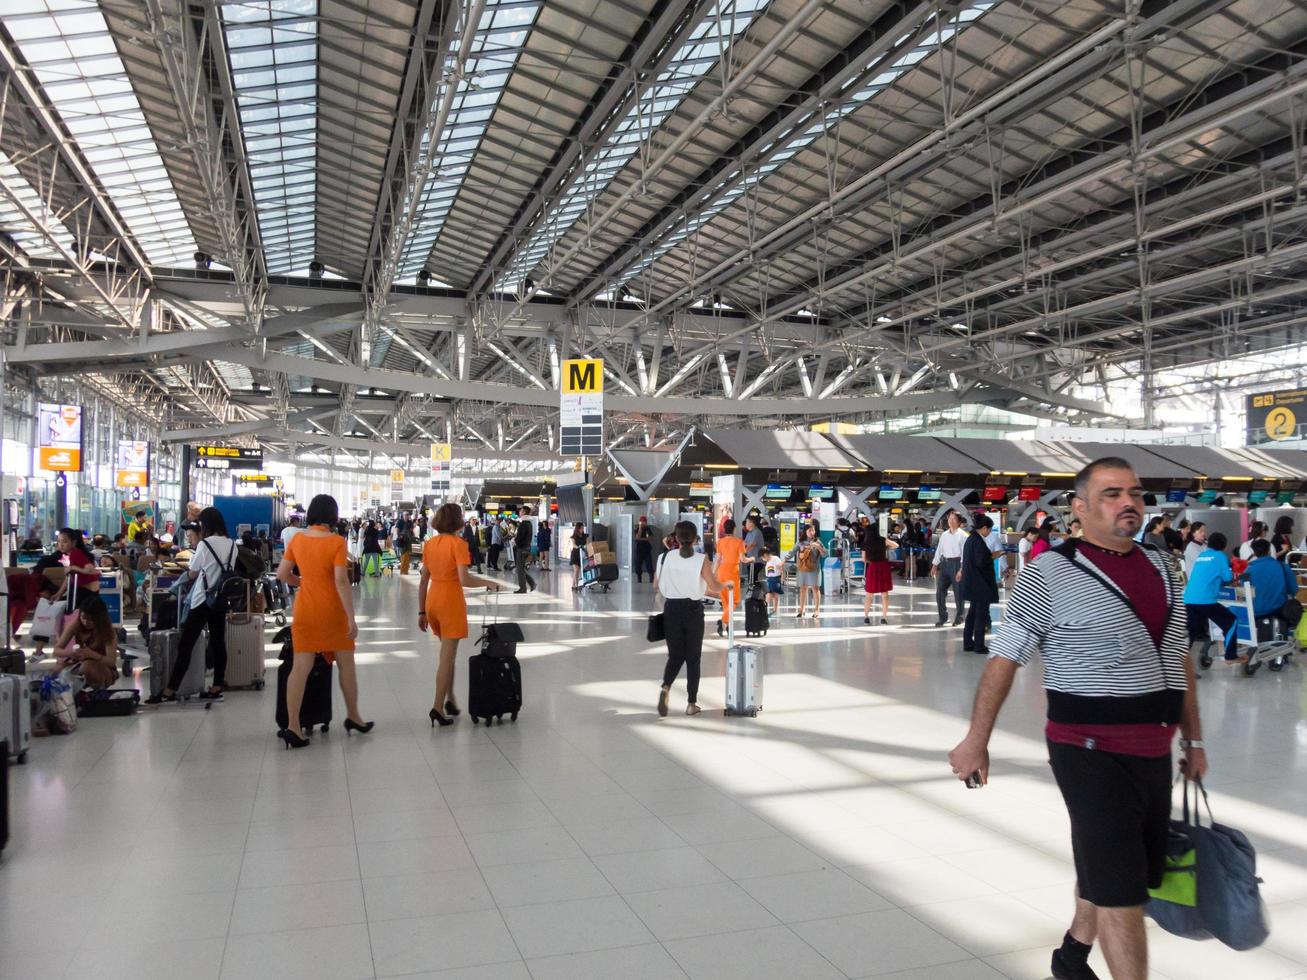 suvarnabhumi bangkok thailand31 oktober 2018på flygplatsen går passagerare till olika delar av flygplatsen. Suvarnabhumi flygplats är thailands huvudflygplats.0n bangkok thailand. foto